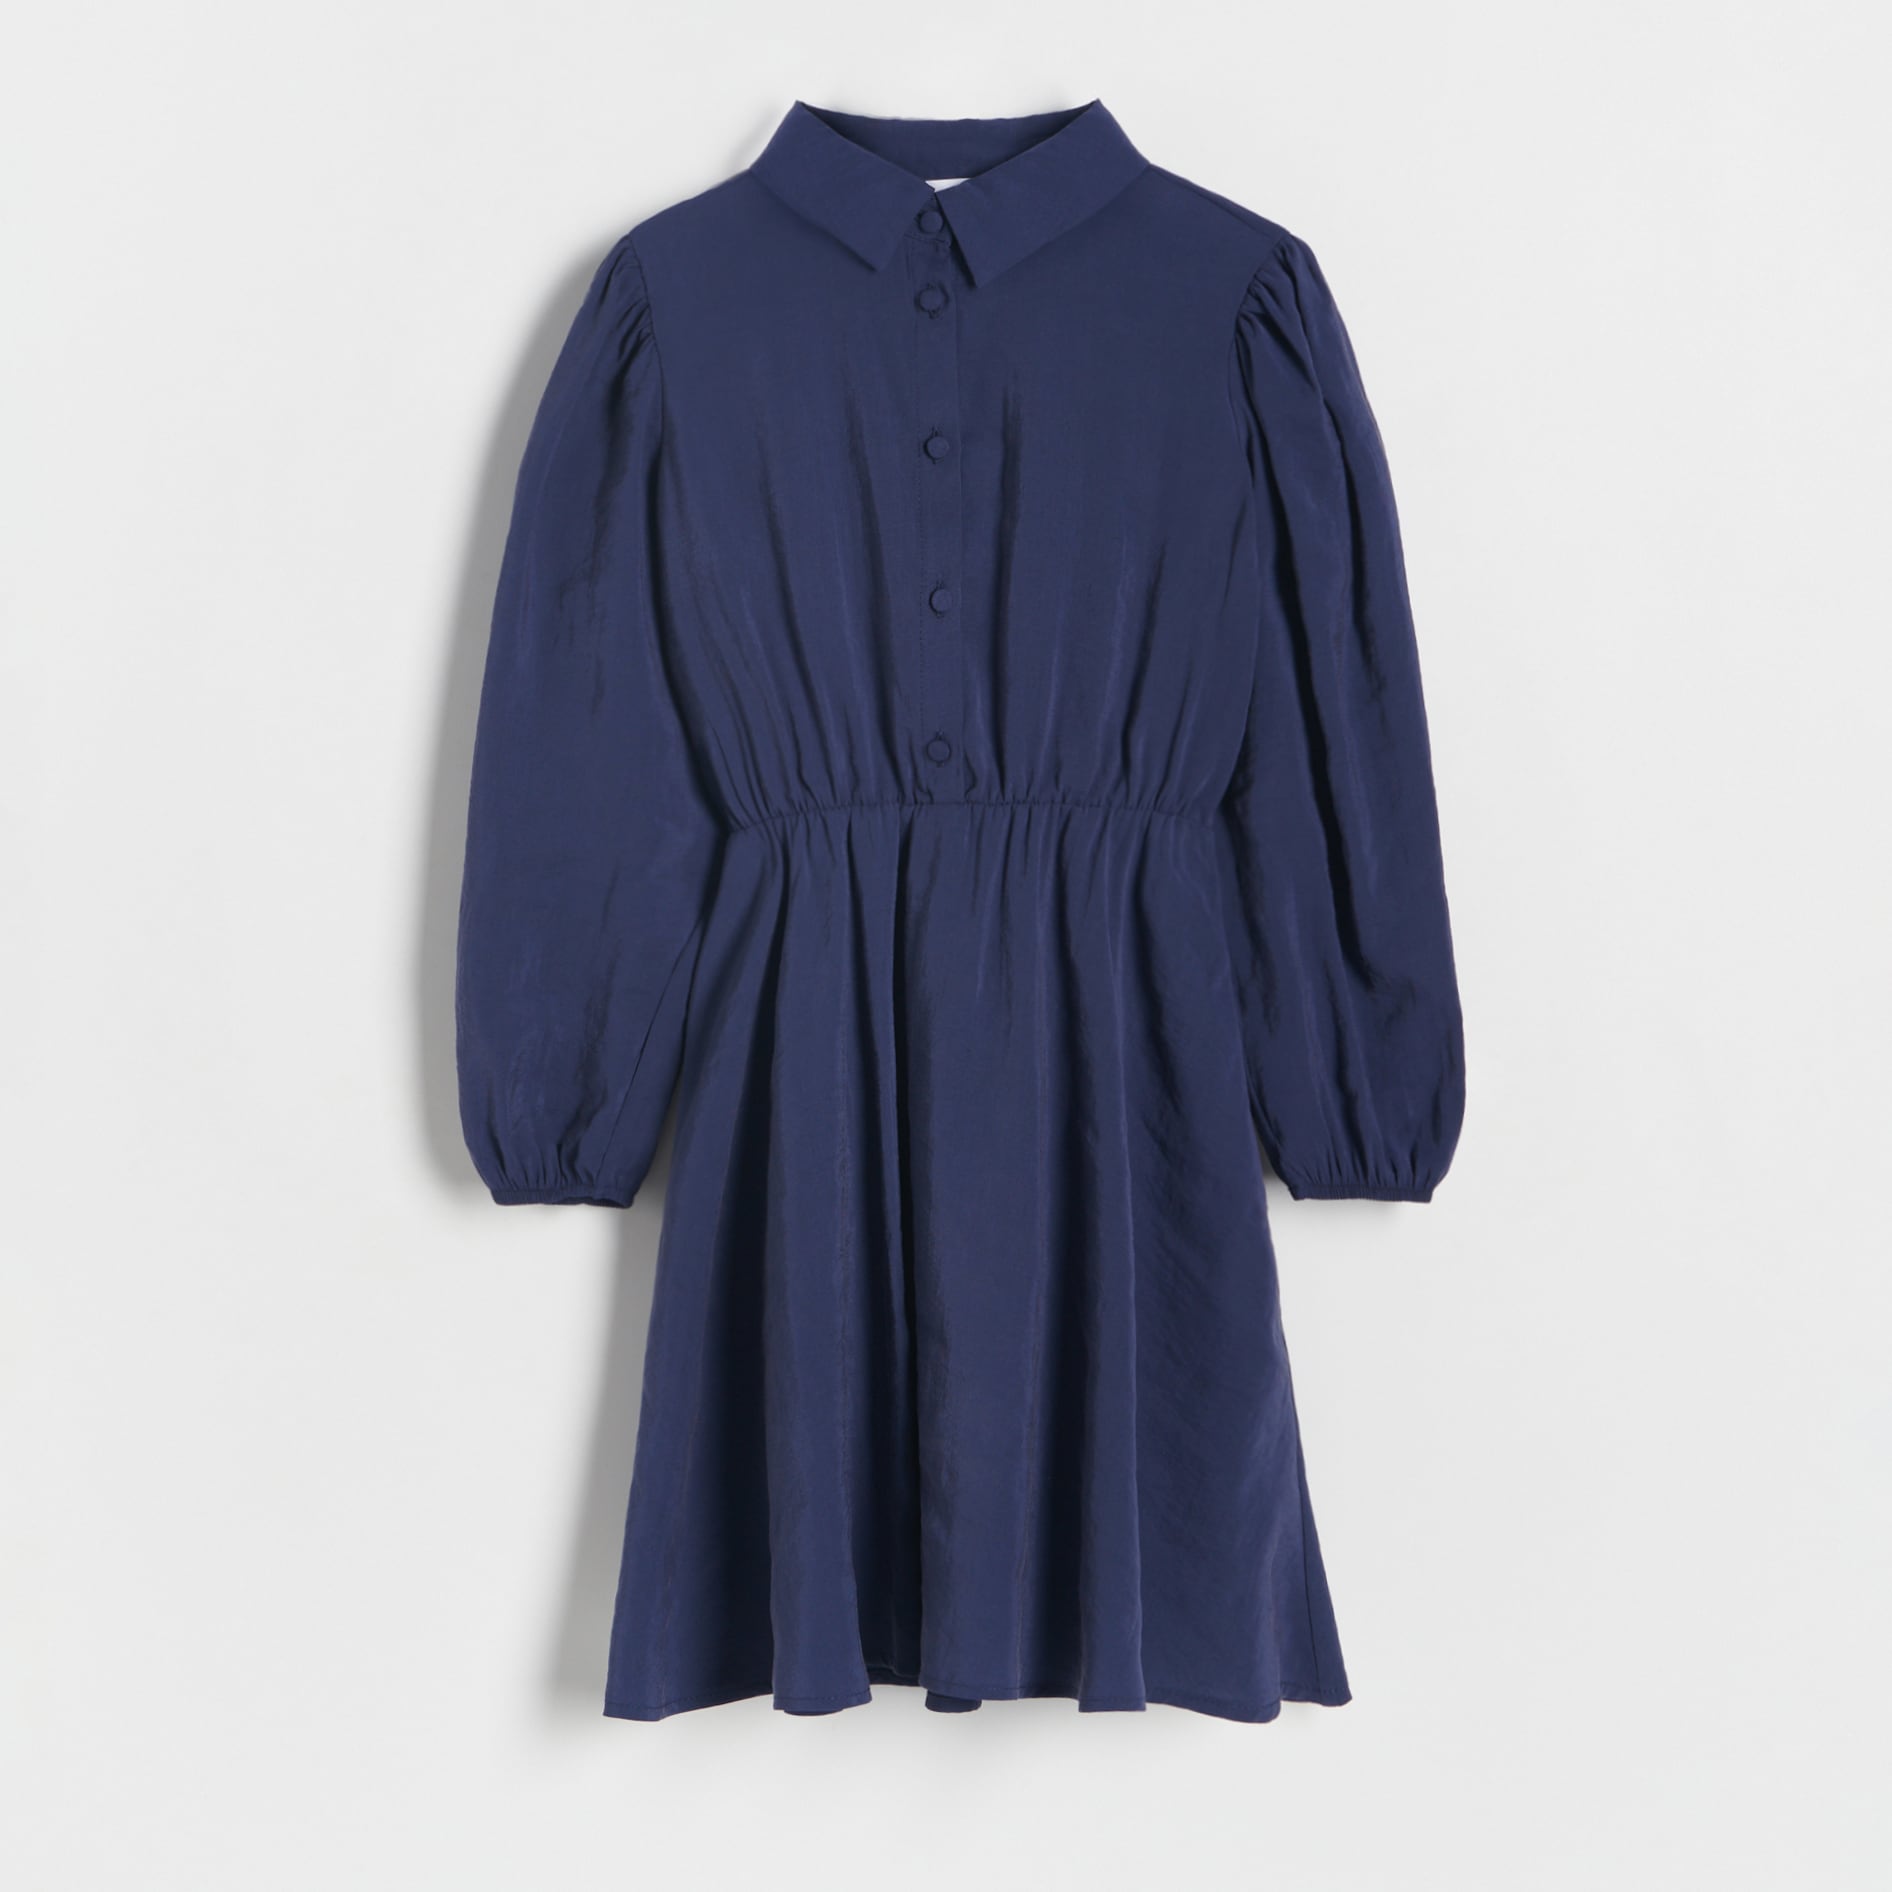 E-shop Reserved - Modalové šaty - Tmavomodrá